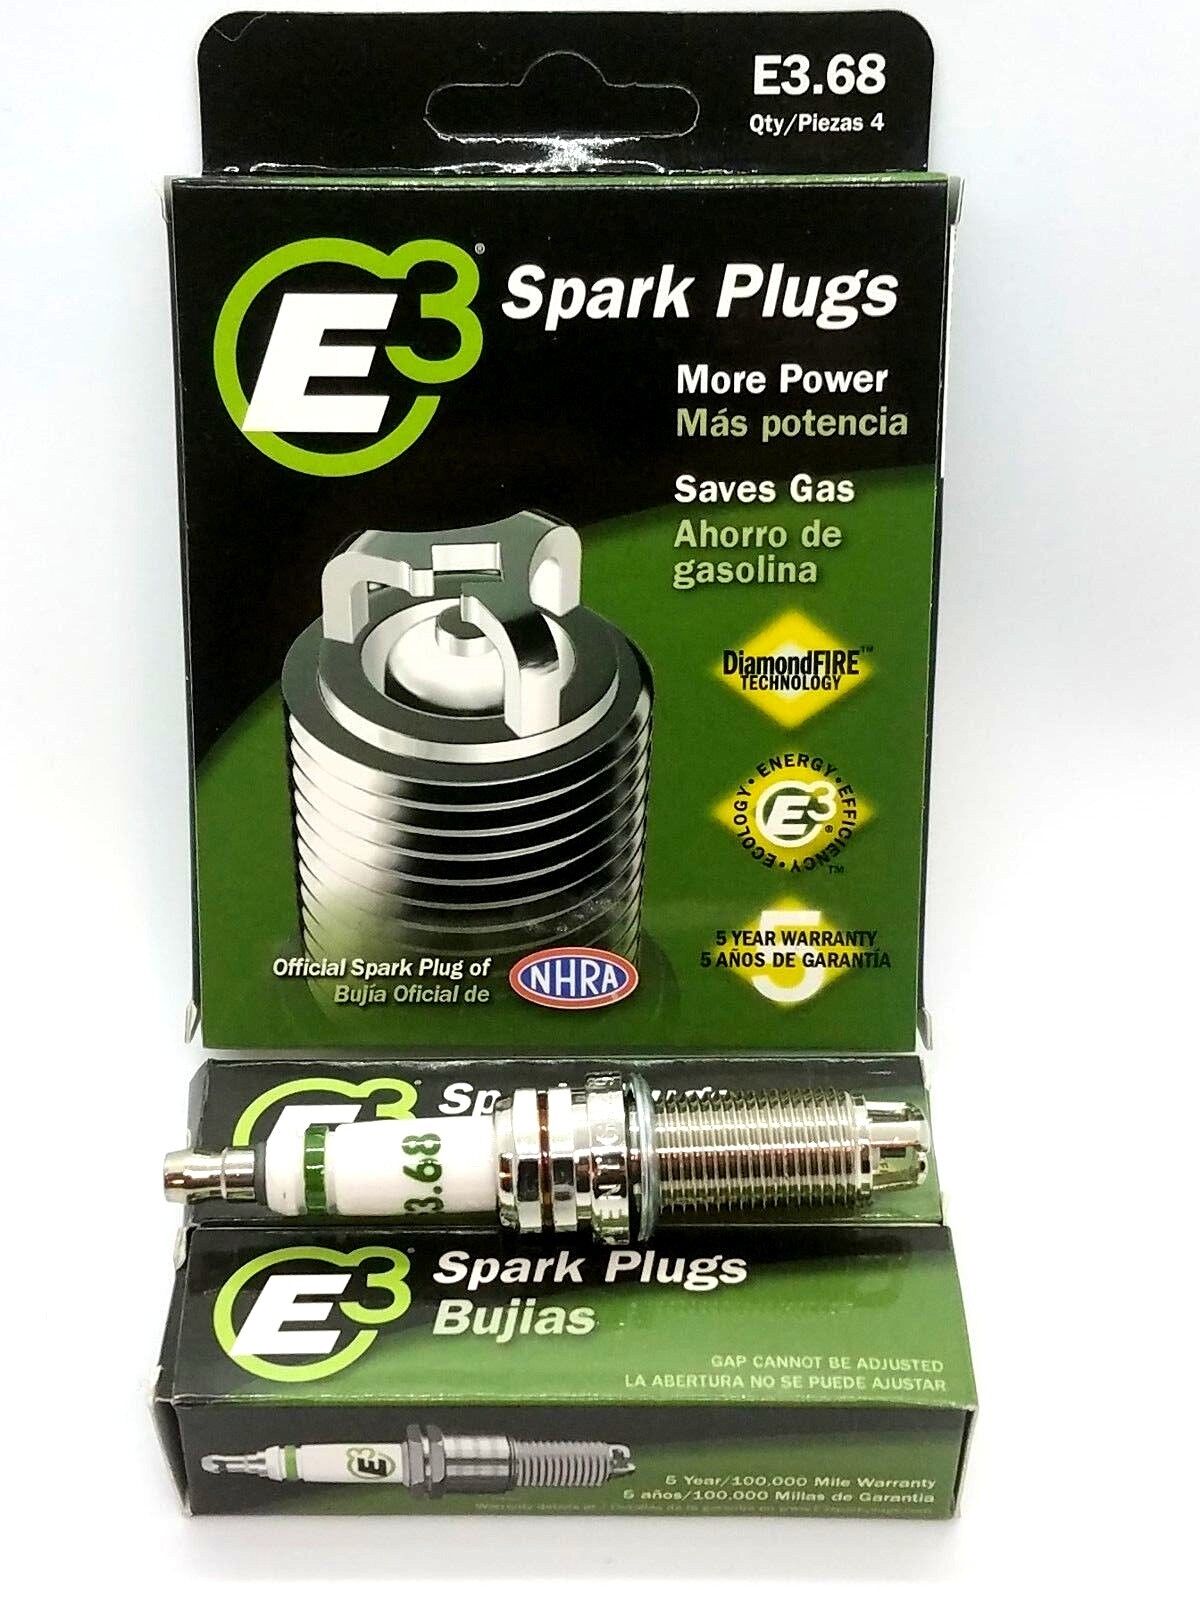 E3.68 E3 Premium Automotive Spark Plugs - 6 SPARK PLUGS